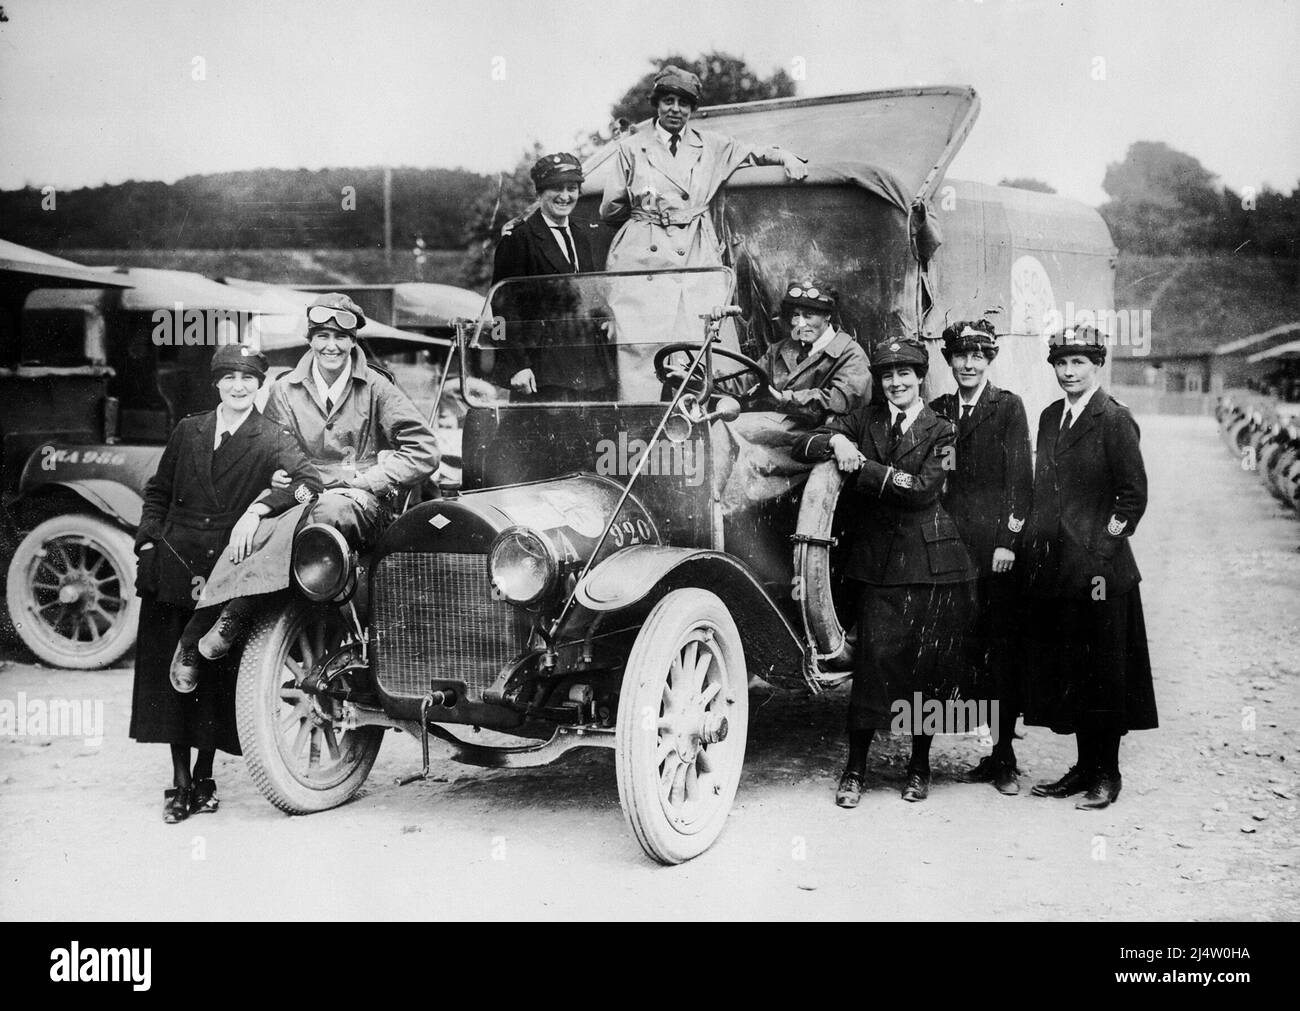 Les ambulanciers du VAD (détachement d'aide volontaire) posent pour la caméra avec leur ambulance, France, pendant la première Guerre mondiale Banque D'Images